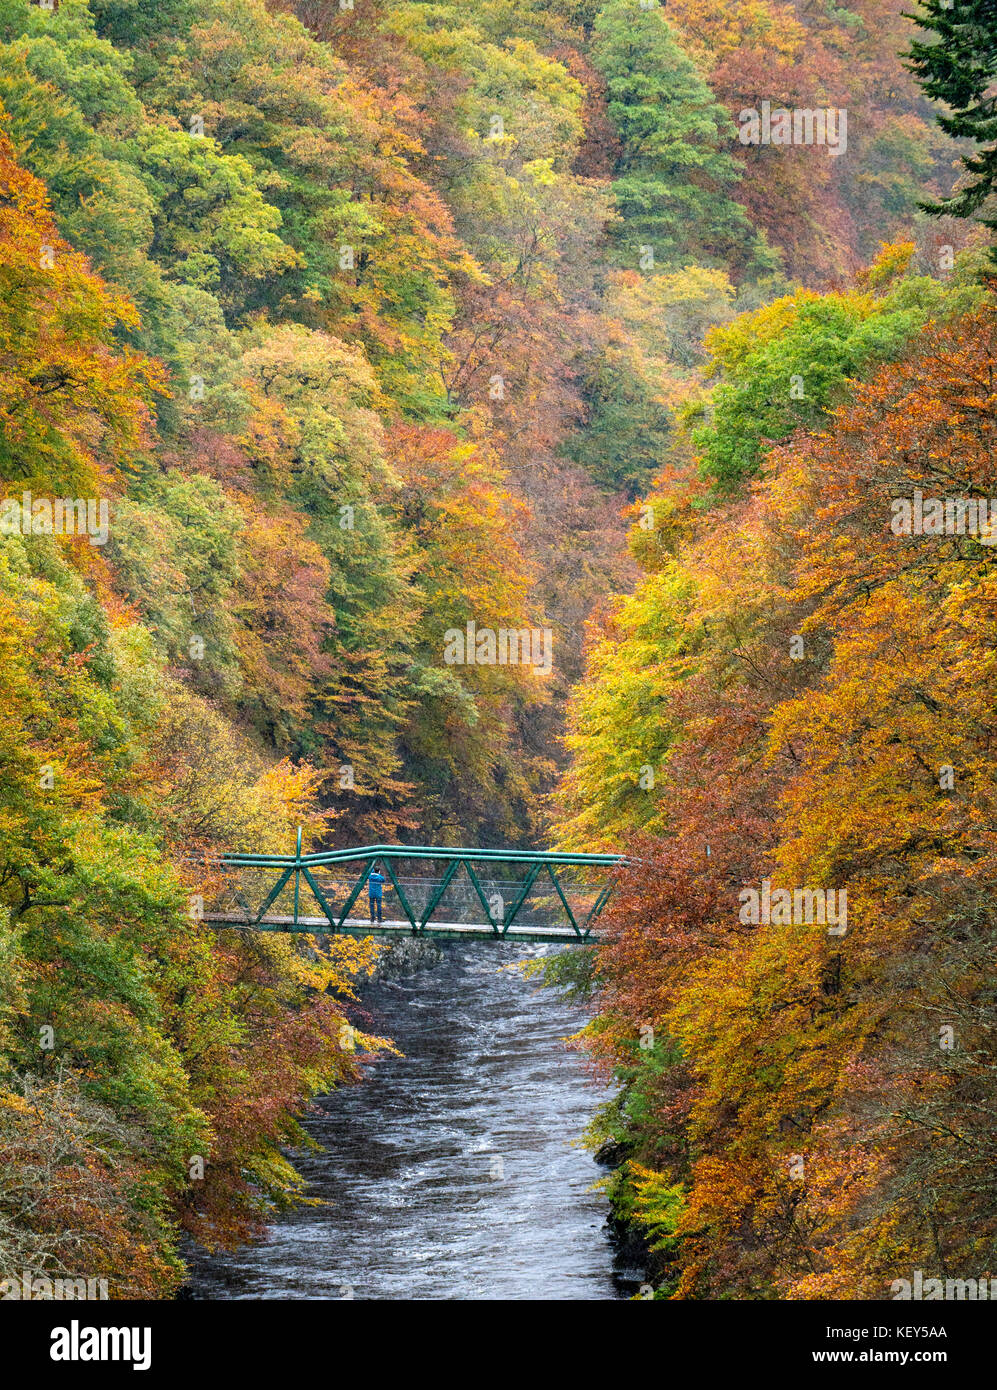 Espectaculares colores otoñales en bosques naturales a orillas del río Garry en el histórico Puerto de Killiecrankie cerca de Pitlochry. Foto de stock